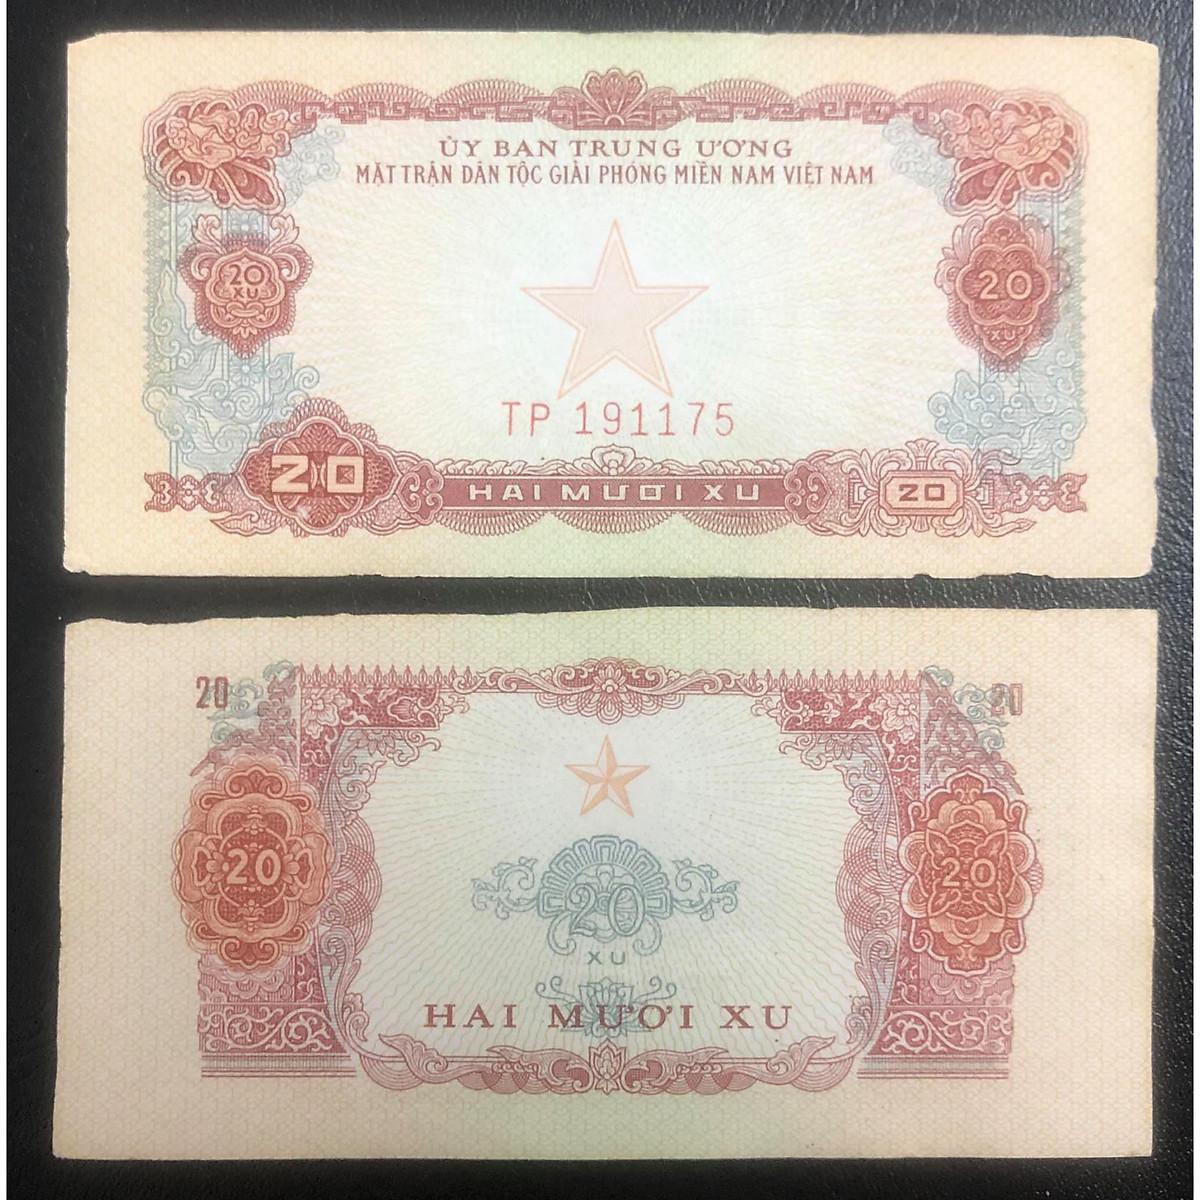 Tiền xưa Việt Nam, tờ 20 xu Ủy ban Trung Ương MTGPMN in hình ngôi sao cùng hoạ tiết độc đáo, kèm phơi bảo vệ có sẵn